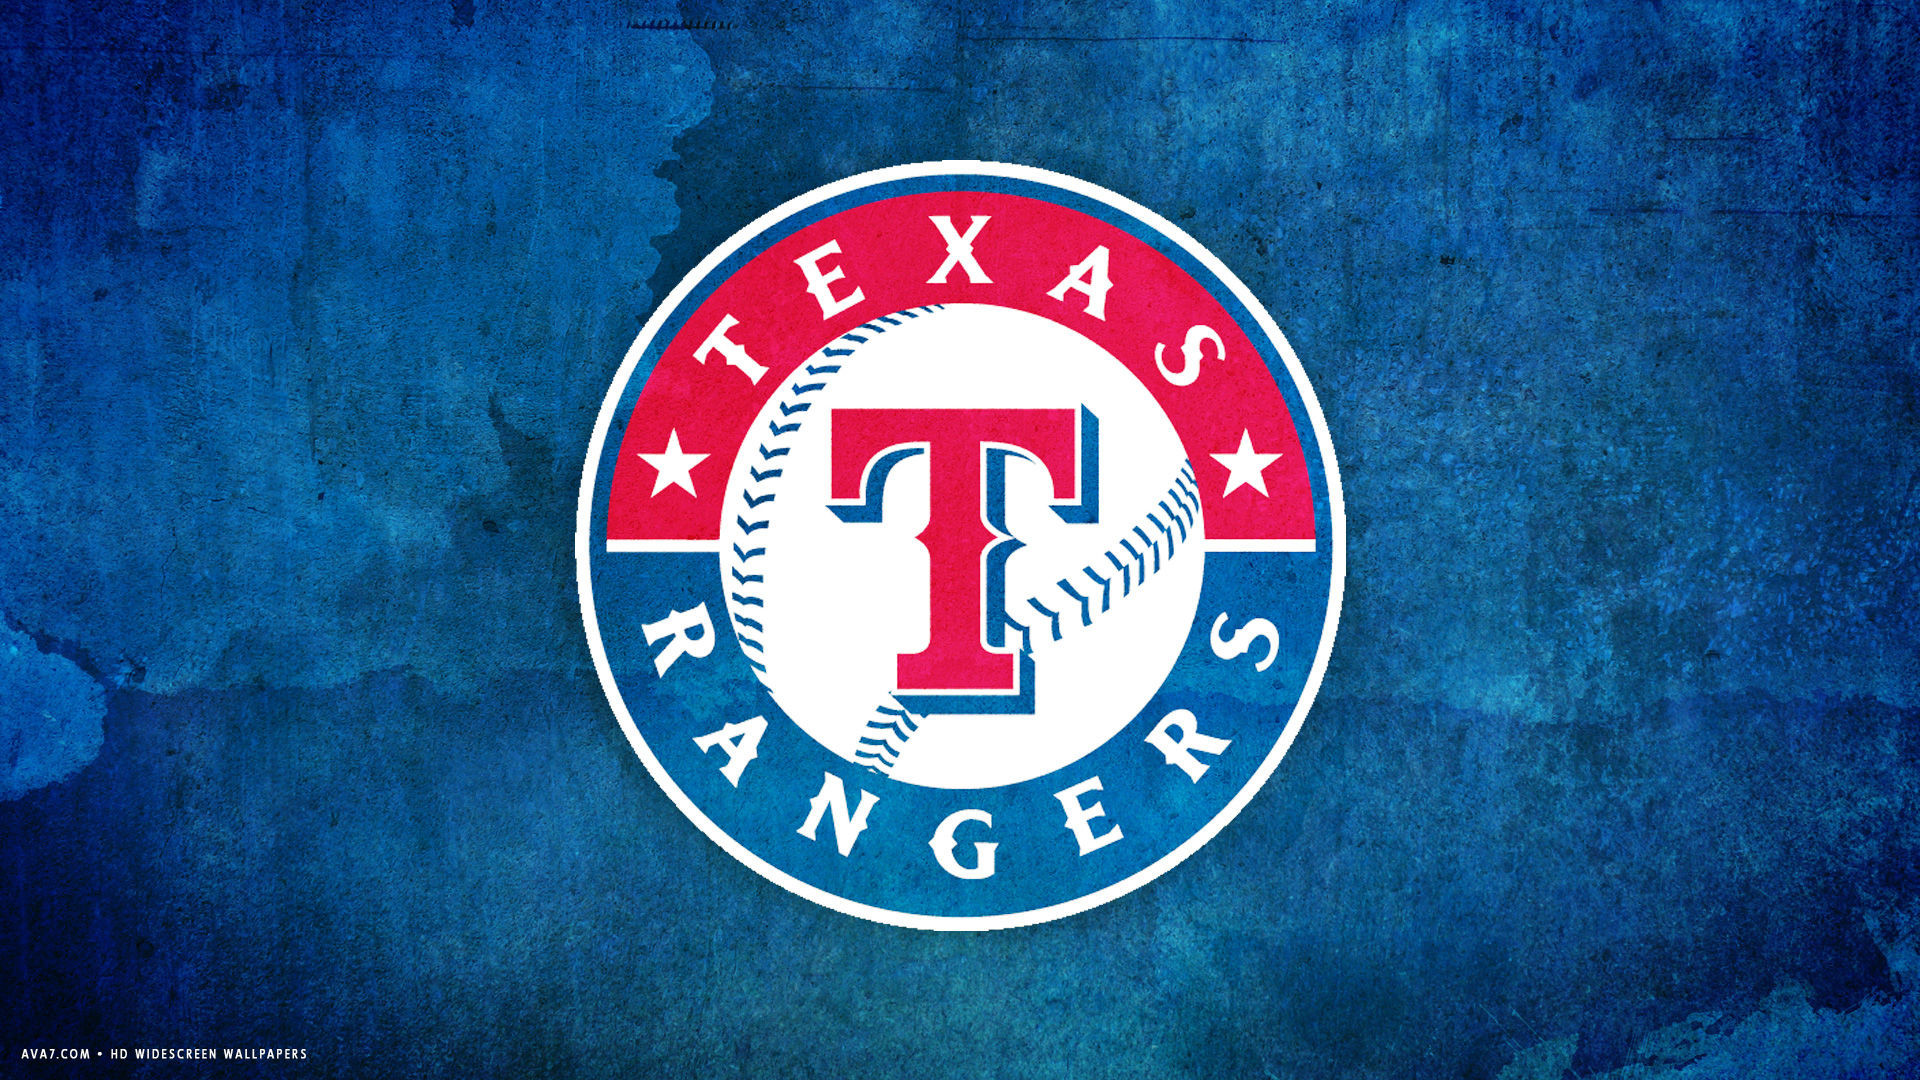 1920x1080, Texas Rangers Mlb Baseball Team Hd Widescreen - Texas Rangers , HD Wallpaper & Backgrounds